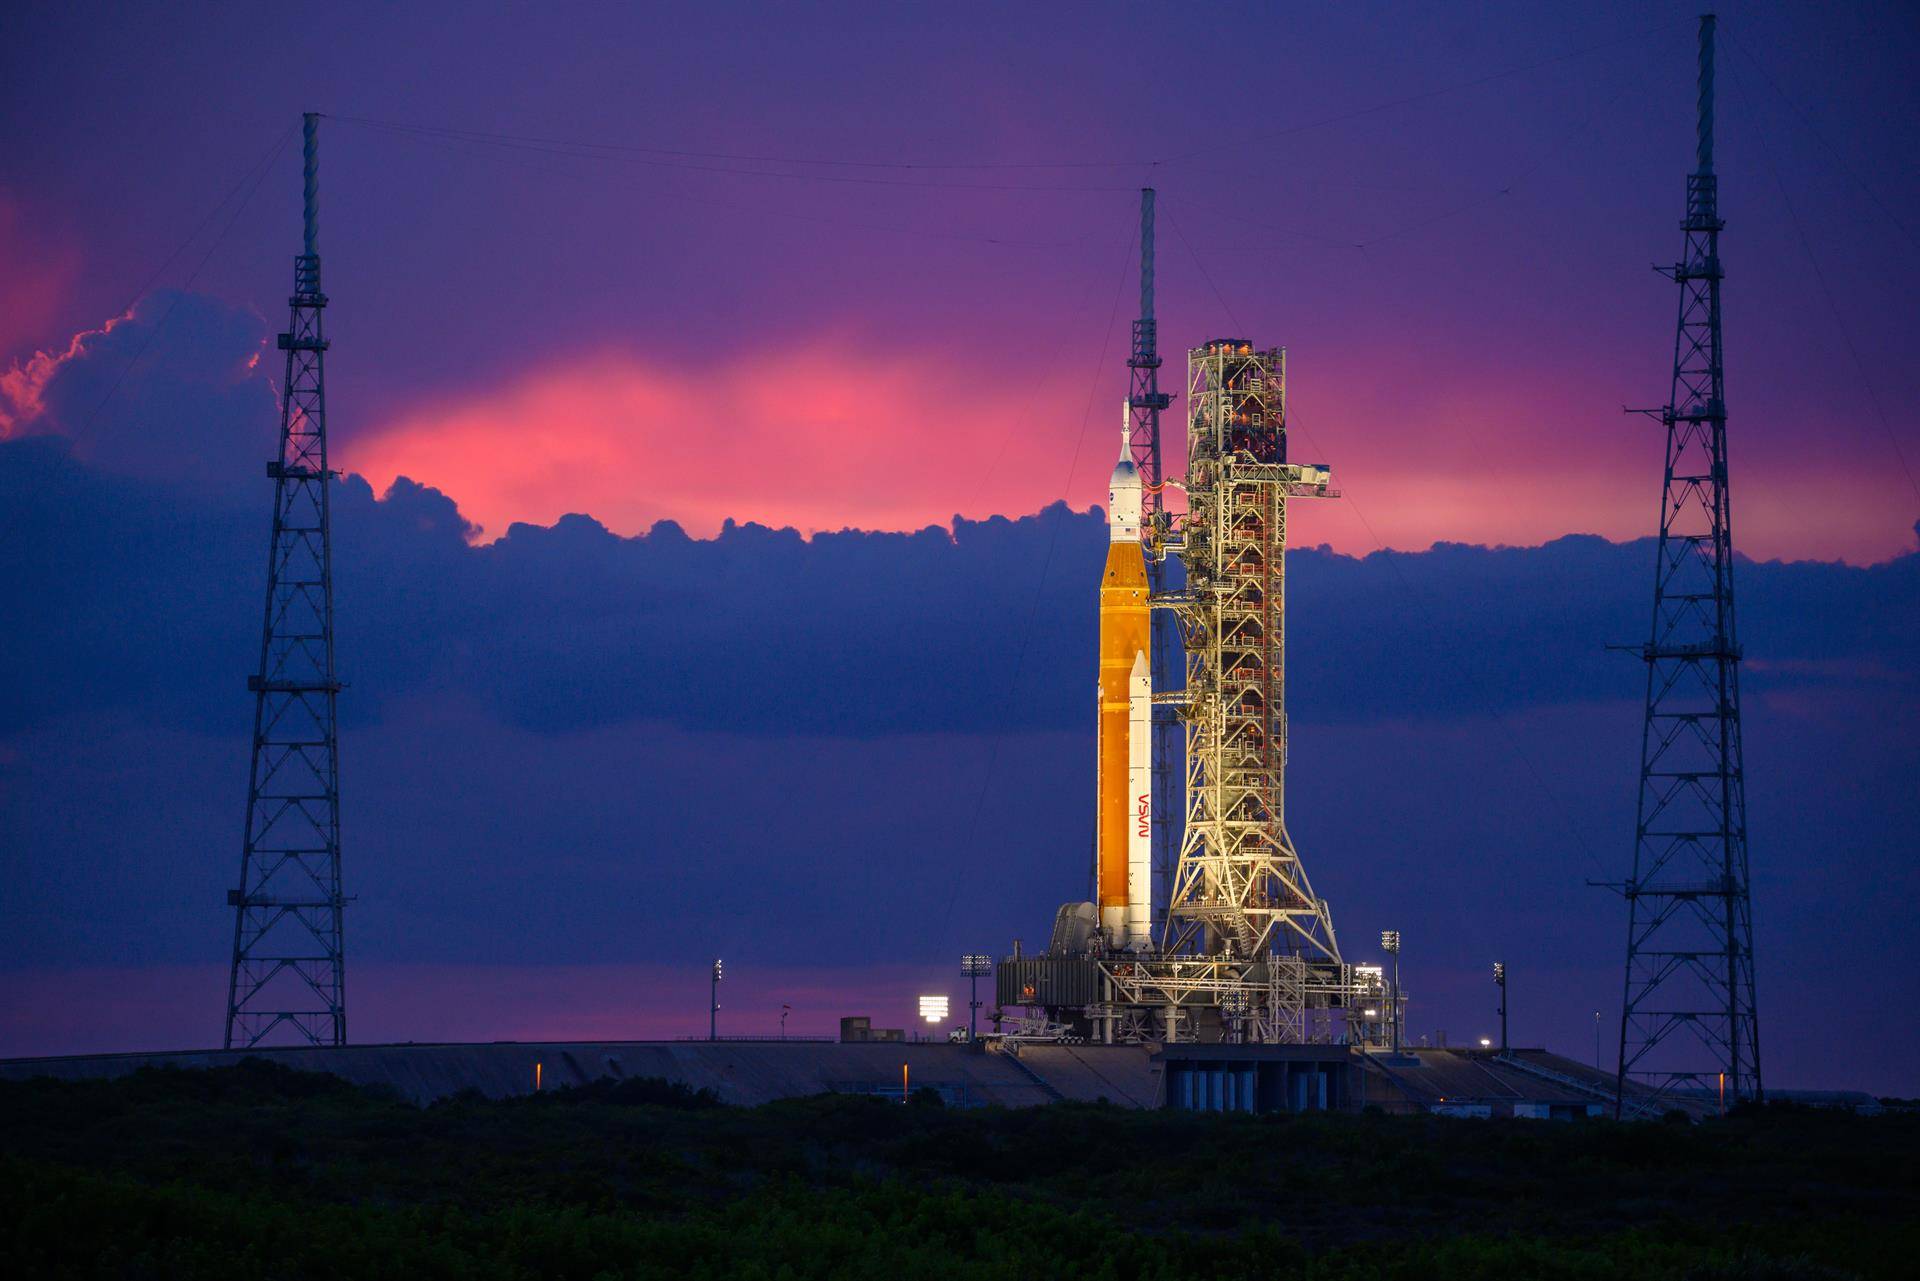 La NASA concluye las pruebas en el cohete de Artemis I con los objetivos alcanzados